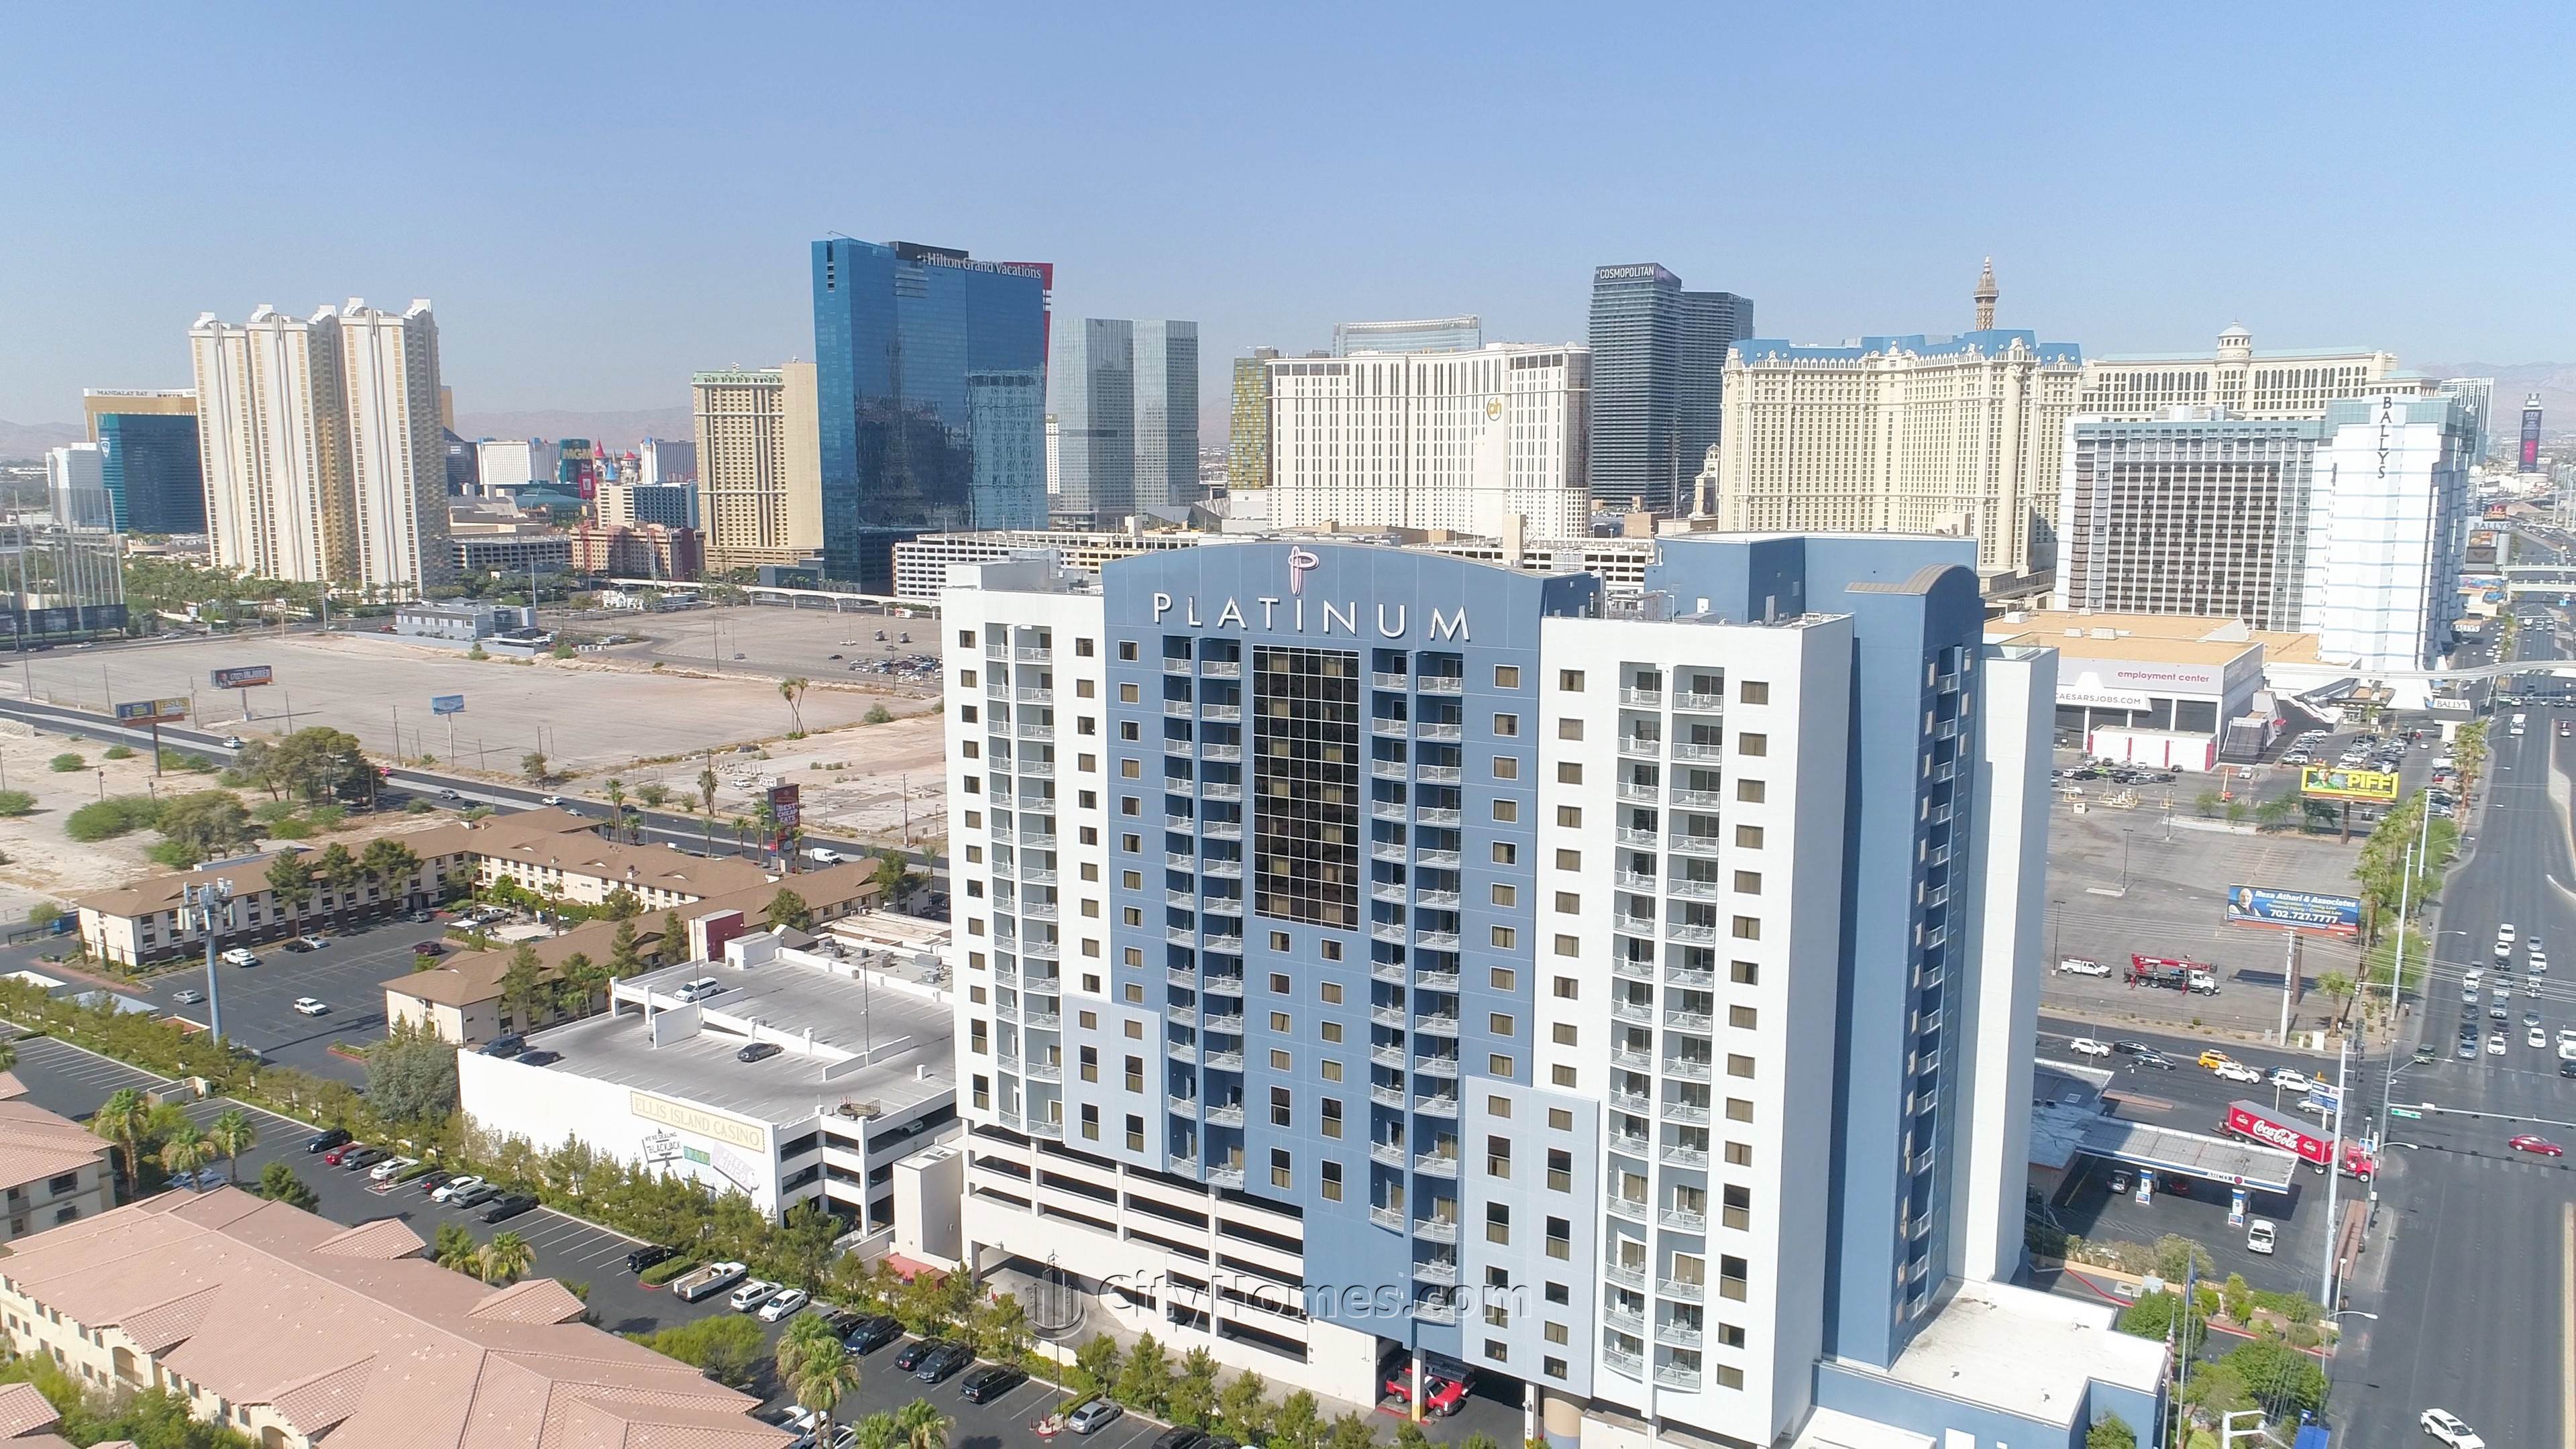 6. Platinum Resort xây dựng tại 211 E Flamingo Road, Paradise, Las Vegas, NV 89169